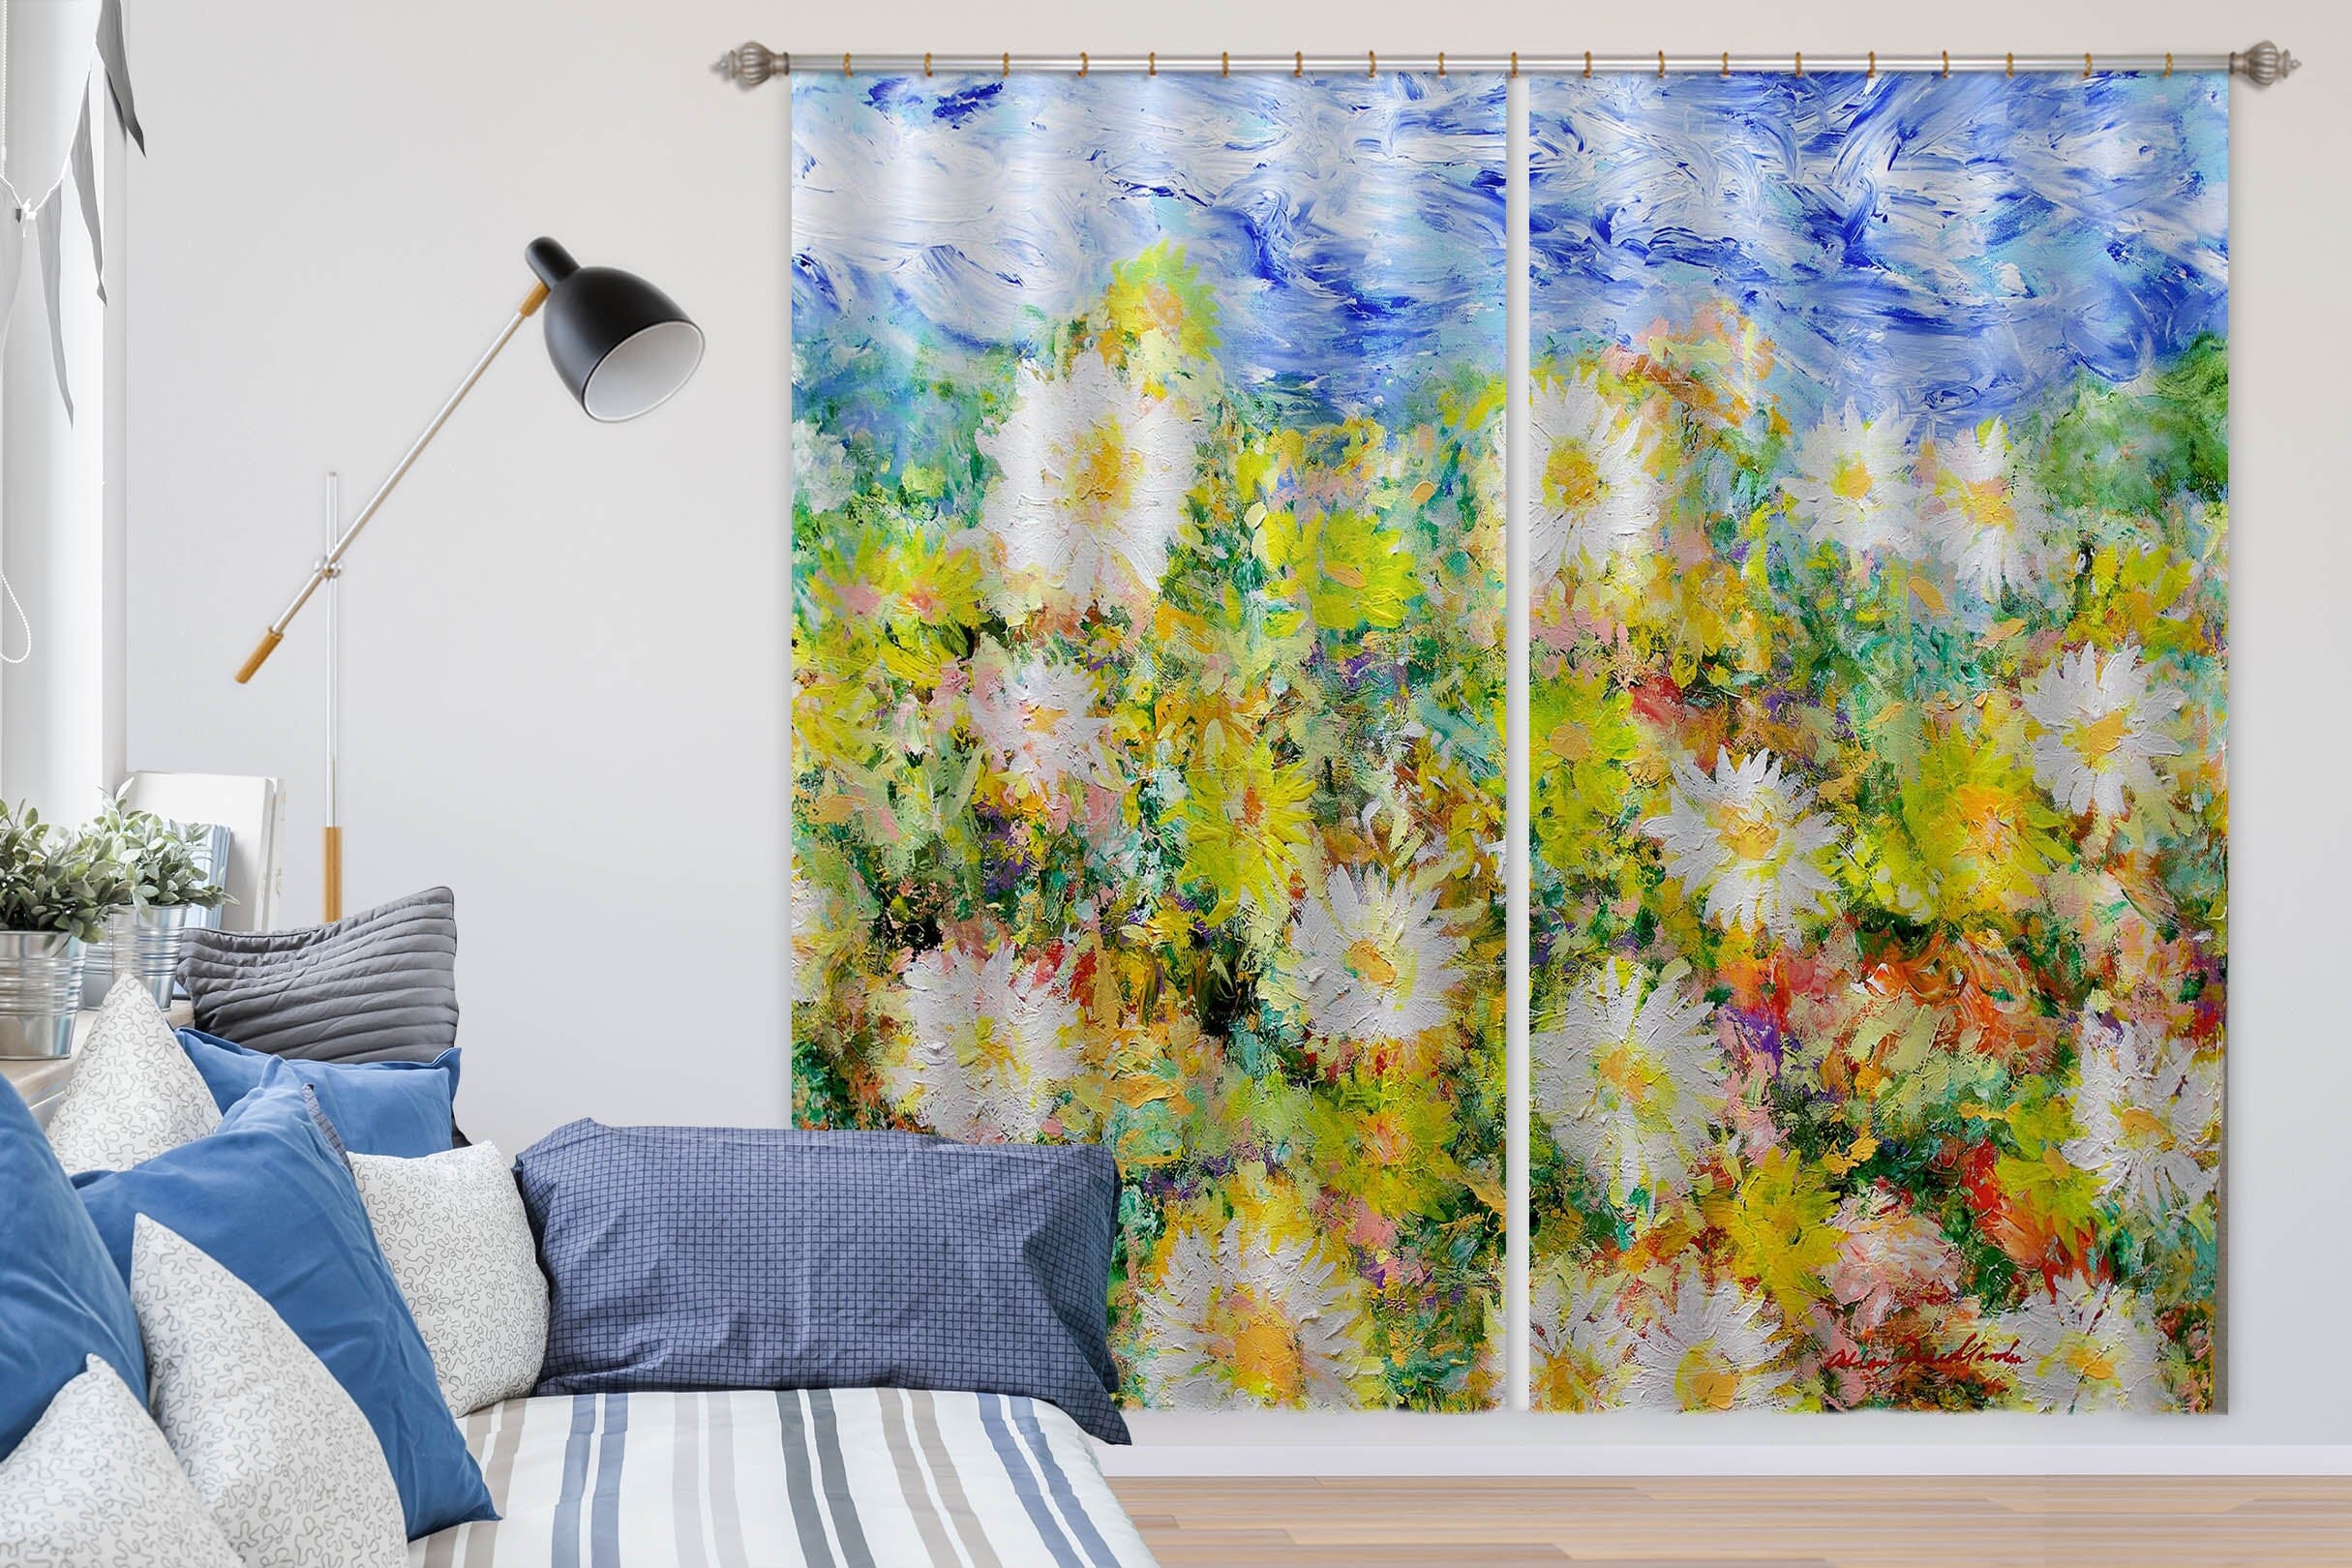 3D Little Chrysanthemum 265 Allan P. Friedlander Curtain Curtains Drapes Curtains AJ Creativity Home 